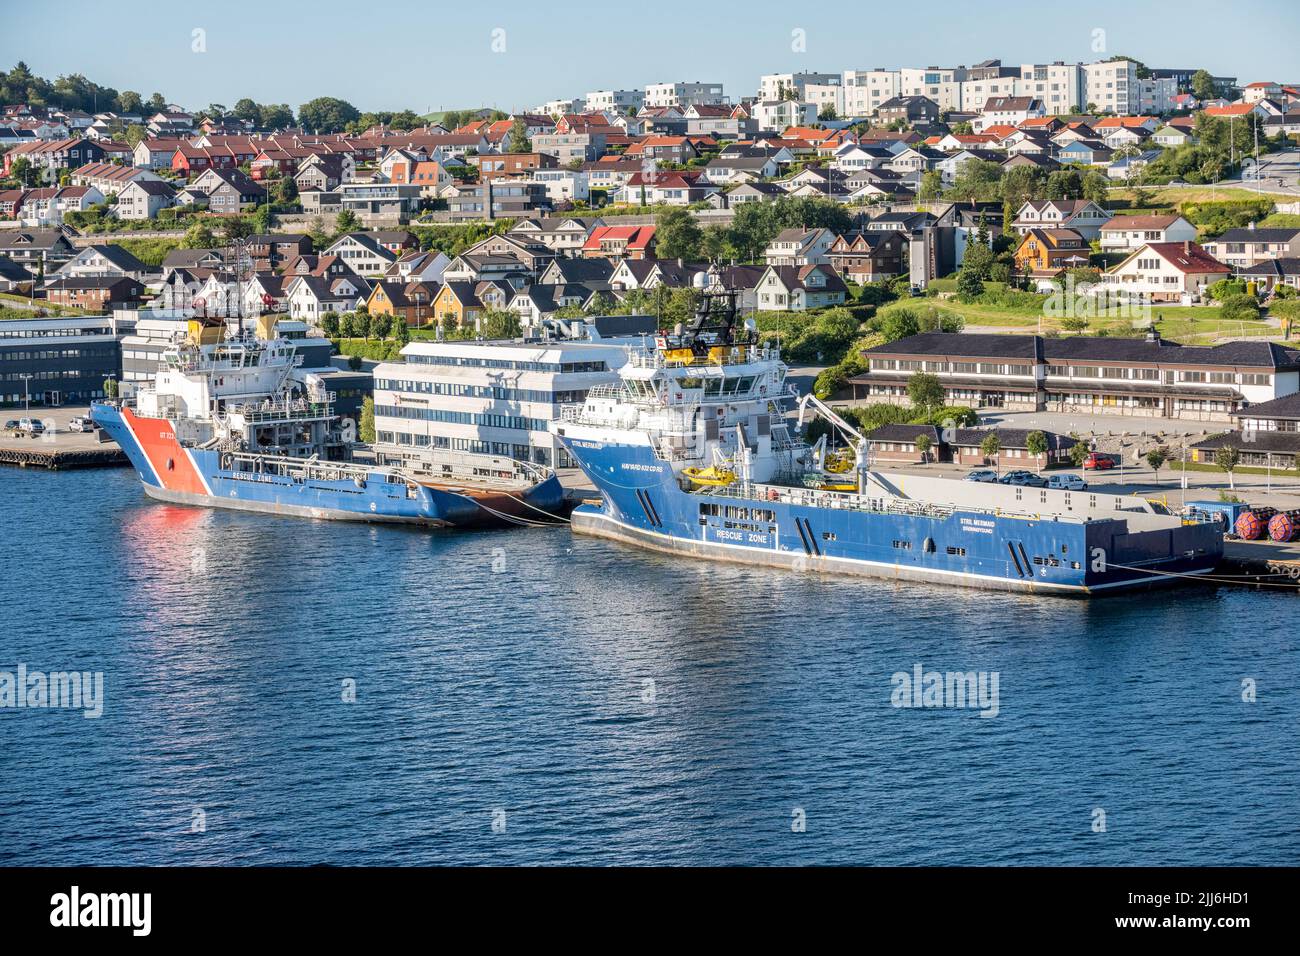 Stril Mermaid es un buque de suministro offshore que opera desde la ciudad noruega de Stavanger, Noruega. Foto de stock